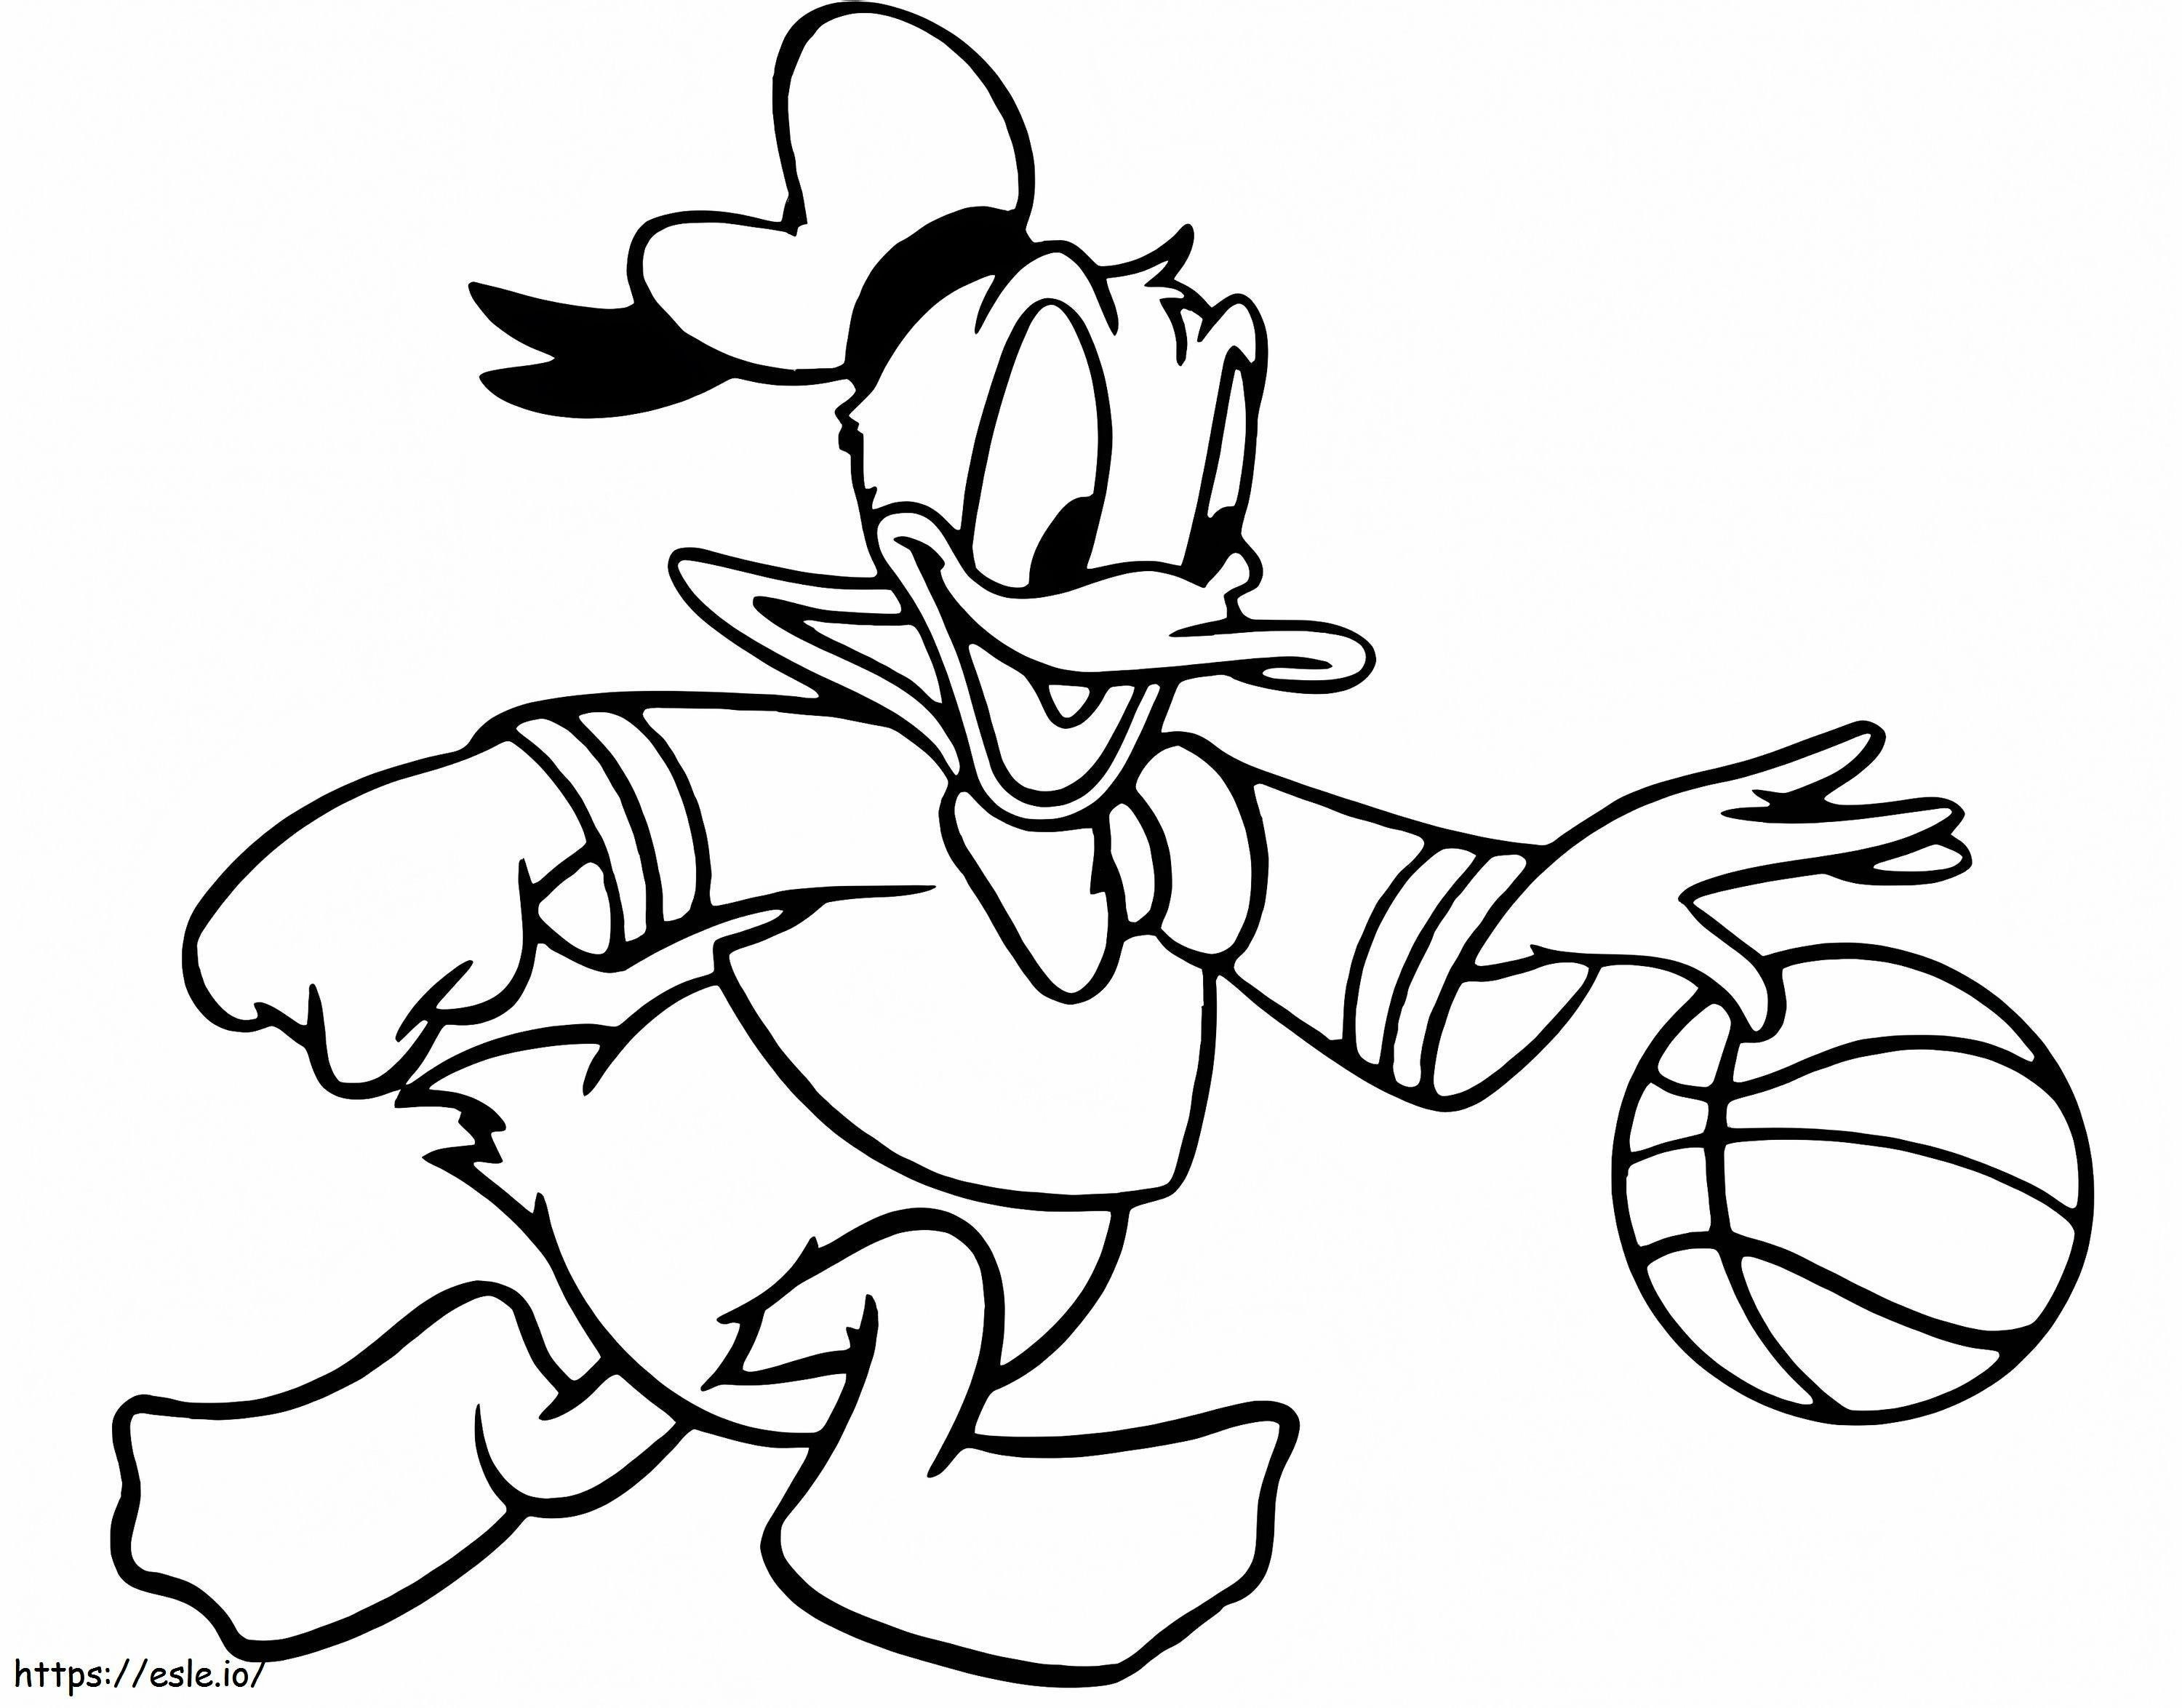 Kaczor Donald gra w koszykówkę kolorowanka